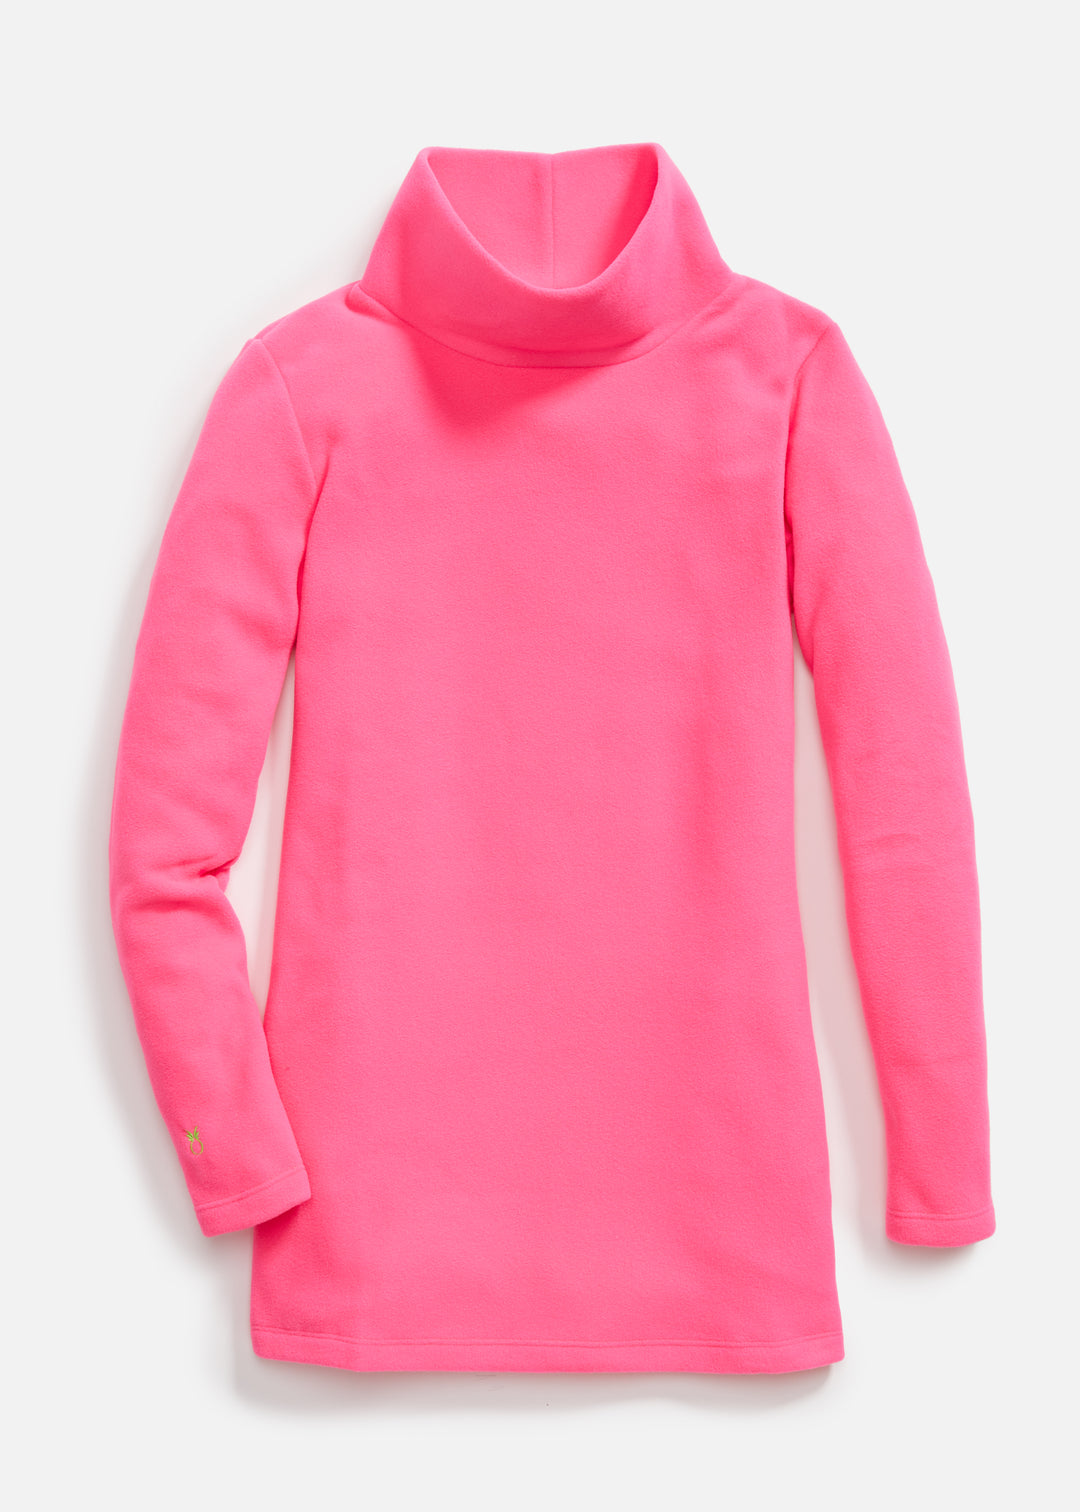 Cobble Hill Turtleneck in Vello Fleece (Neon Pink)